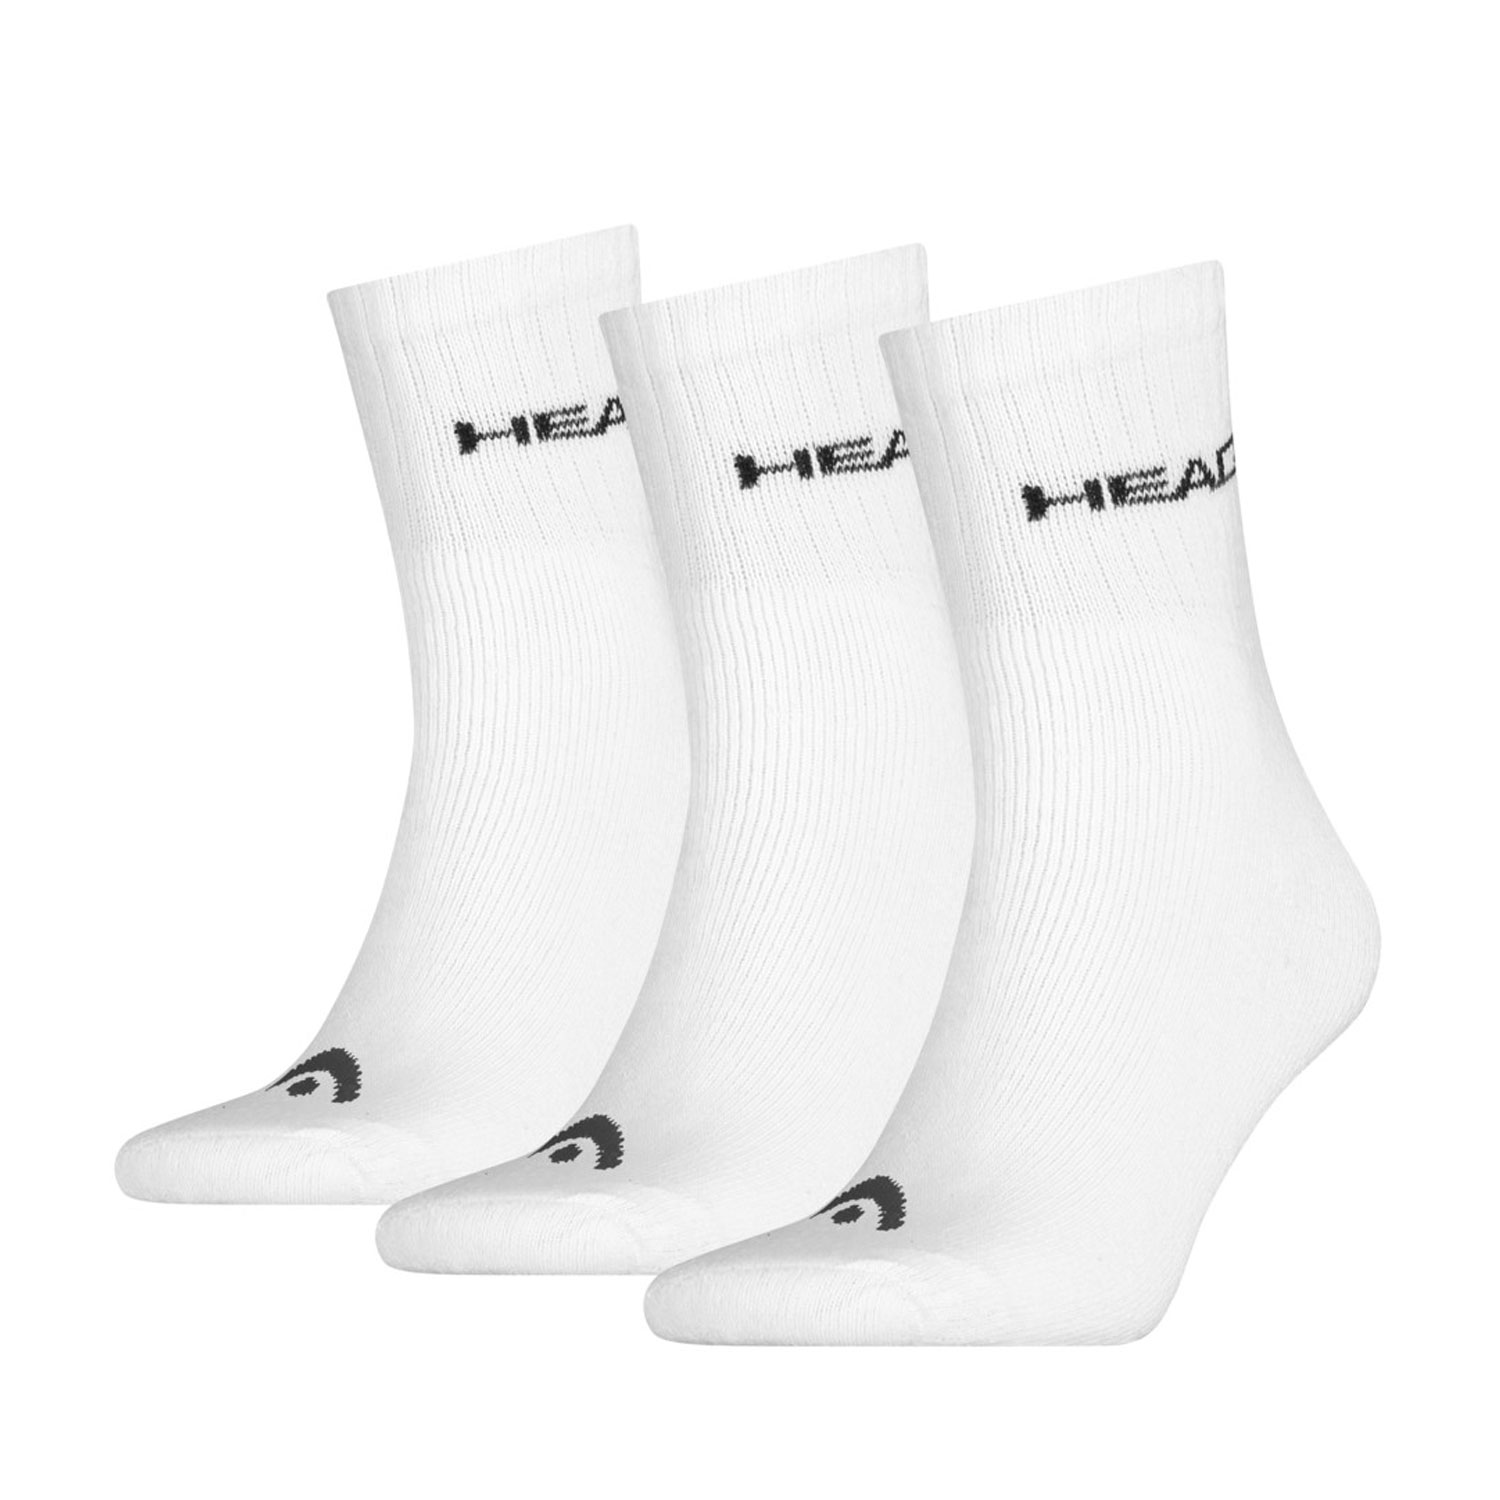 Head Club x 3 Socks - White/Black